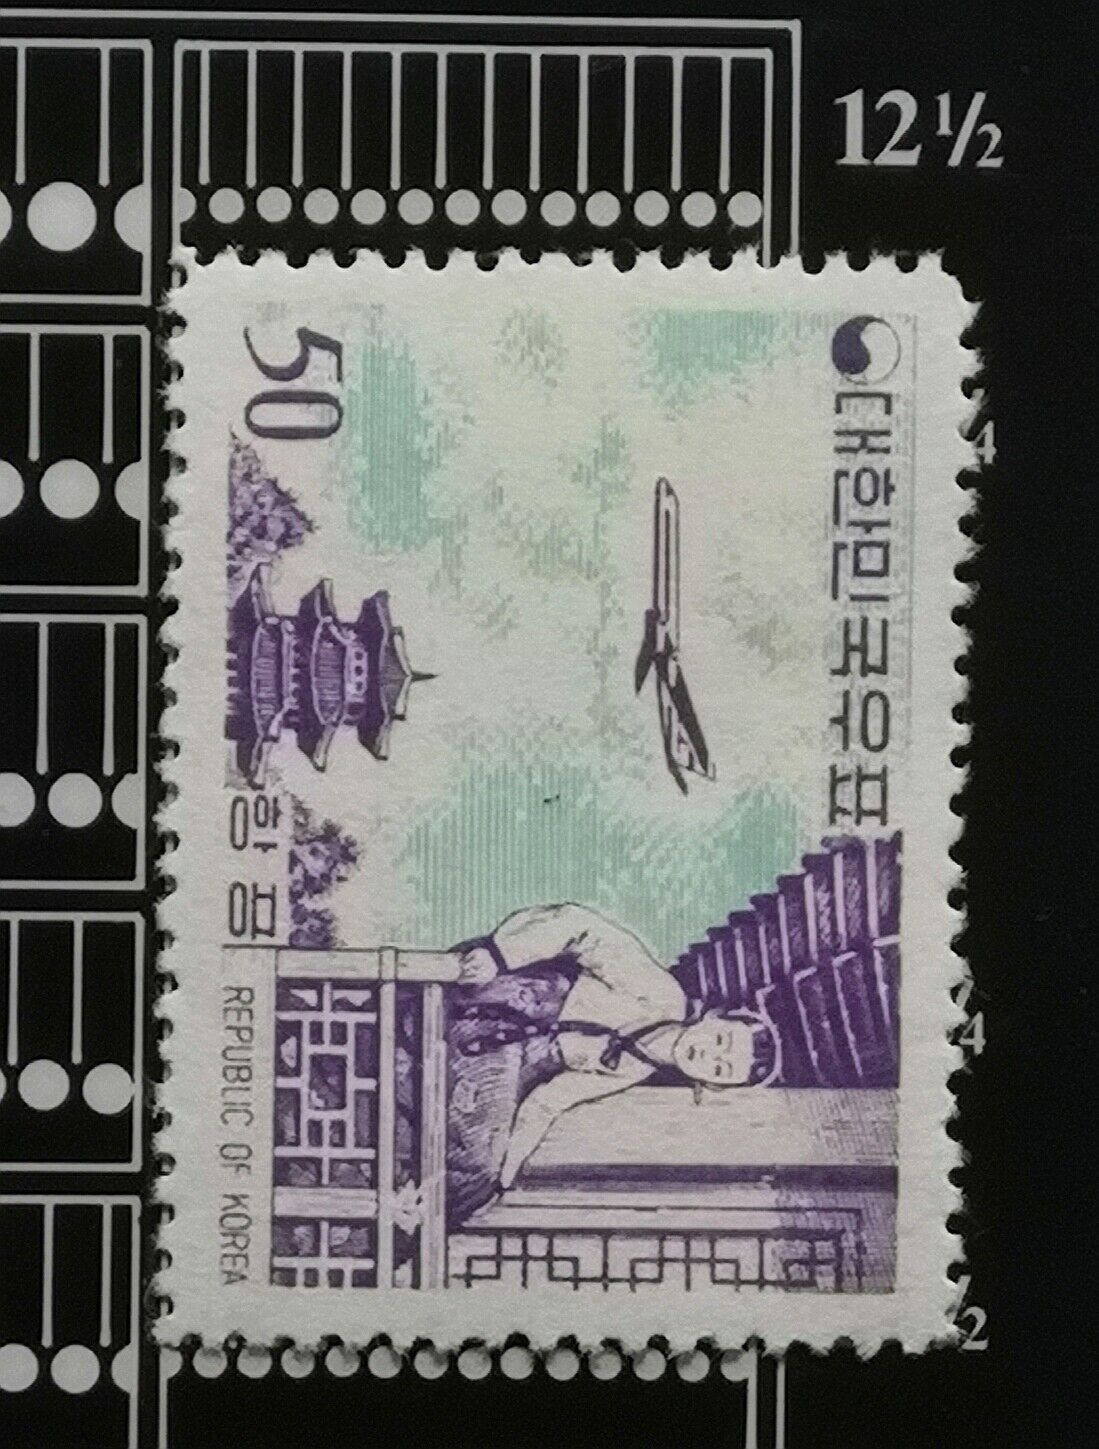 South Korea 1961 Full Set, Original Gum, Unused, perf.12.1/2 Airmail. Без бренда - фотография #4